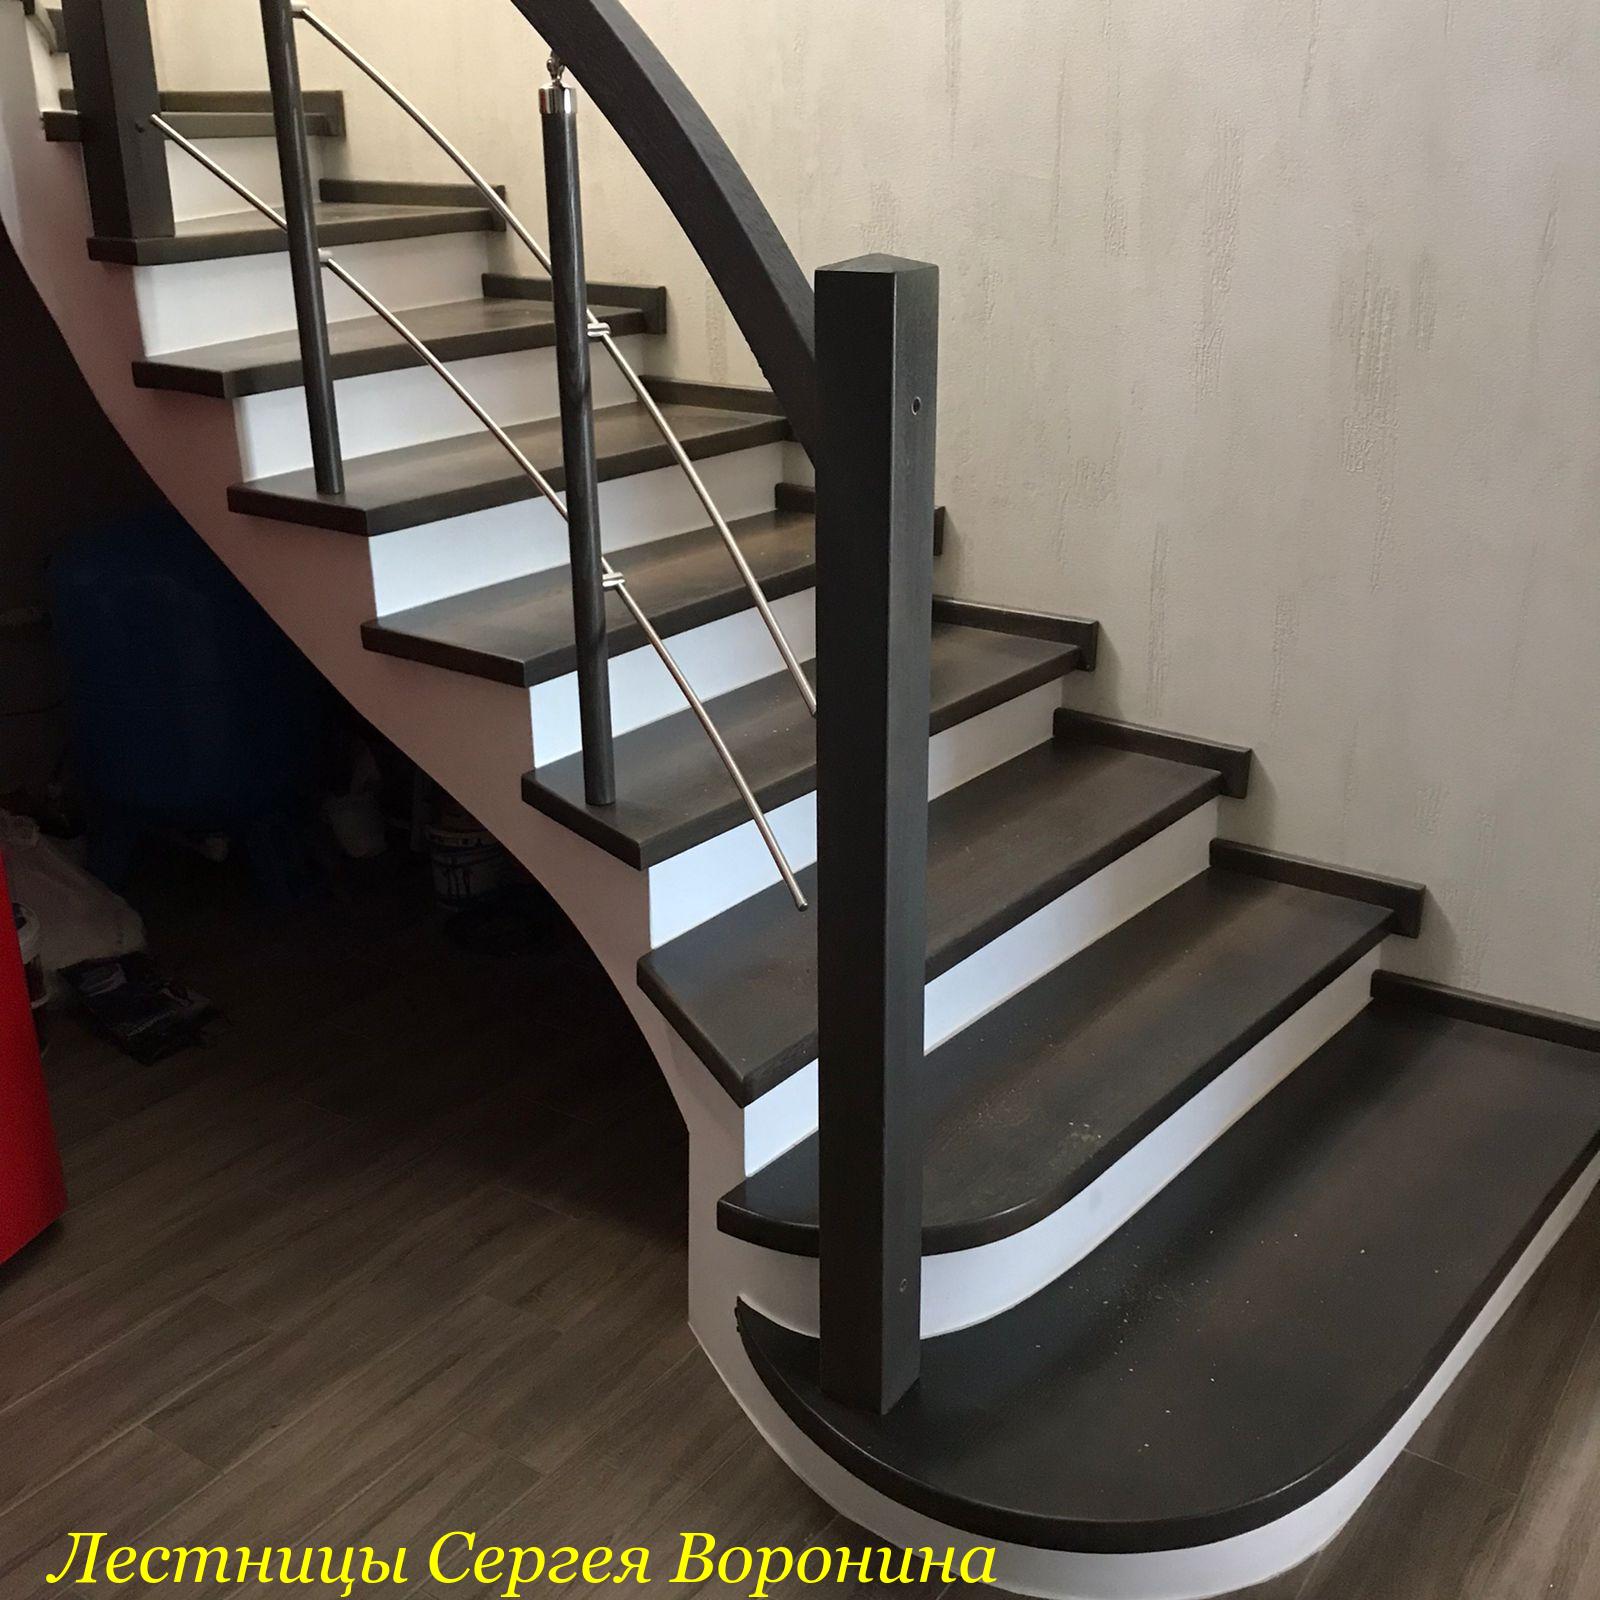 Межэтажные Лестницы Сергея Воронина, Воронеж - 1 Отрадное